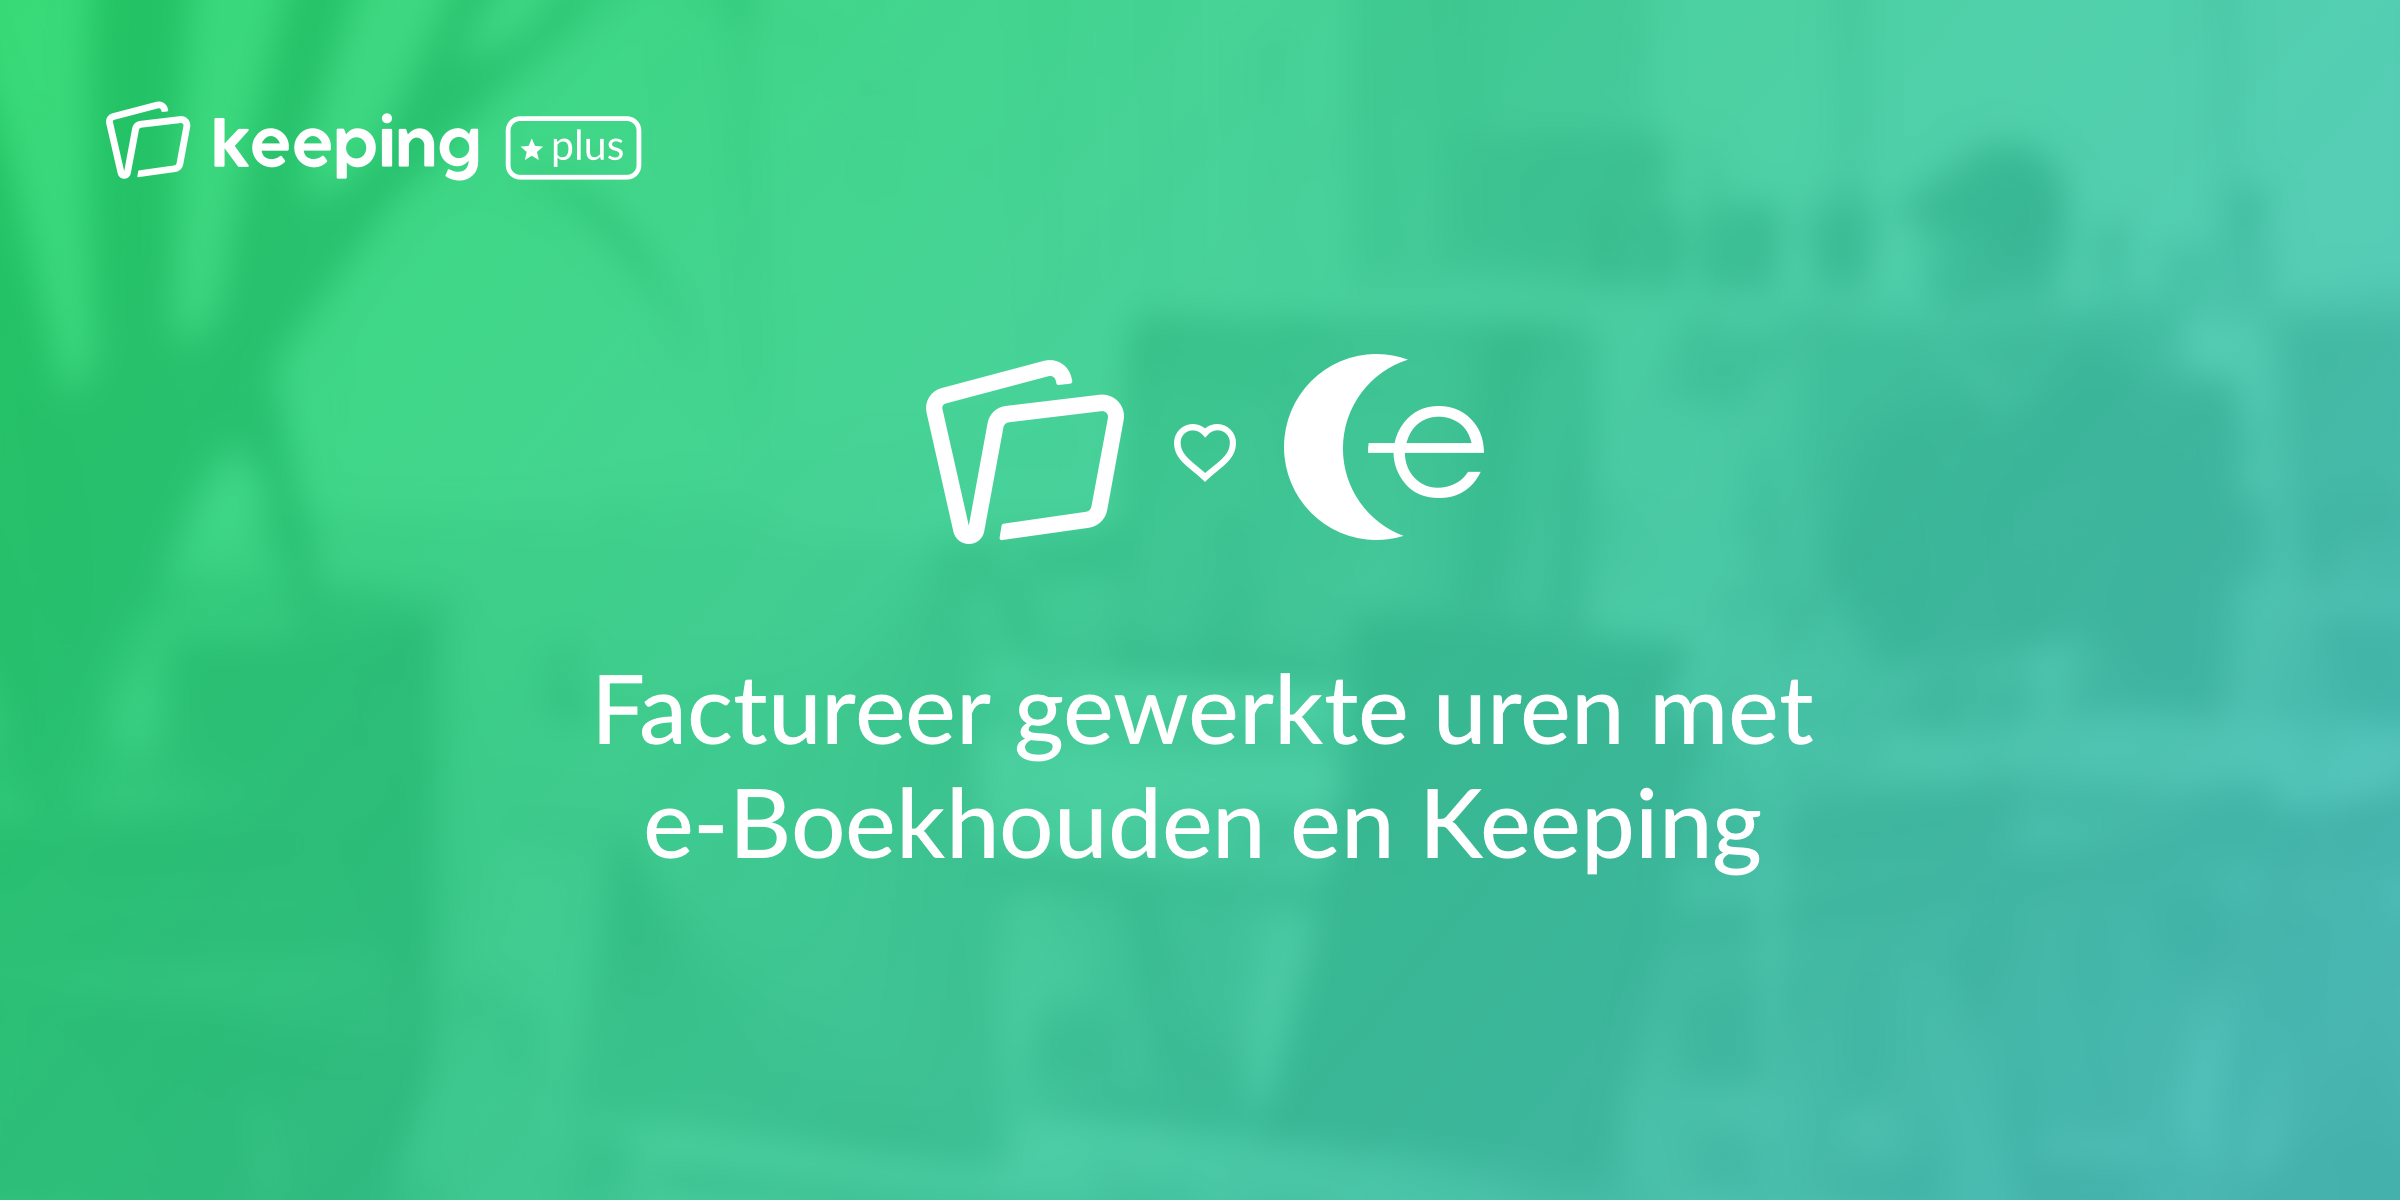 Urenregistratie en facturatie combineren met e-Boekhouden.nl en Keeping